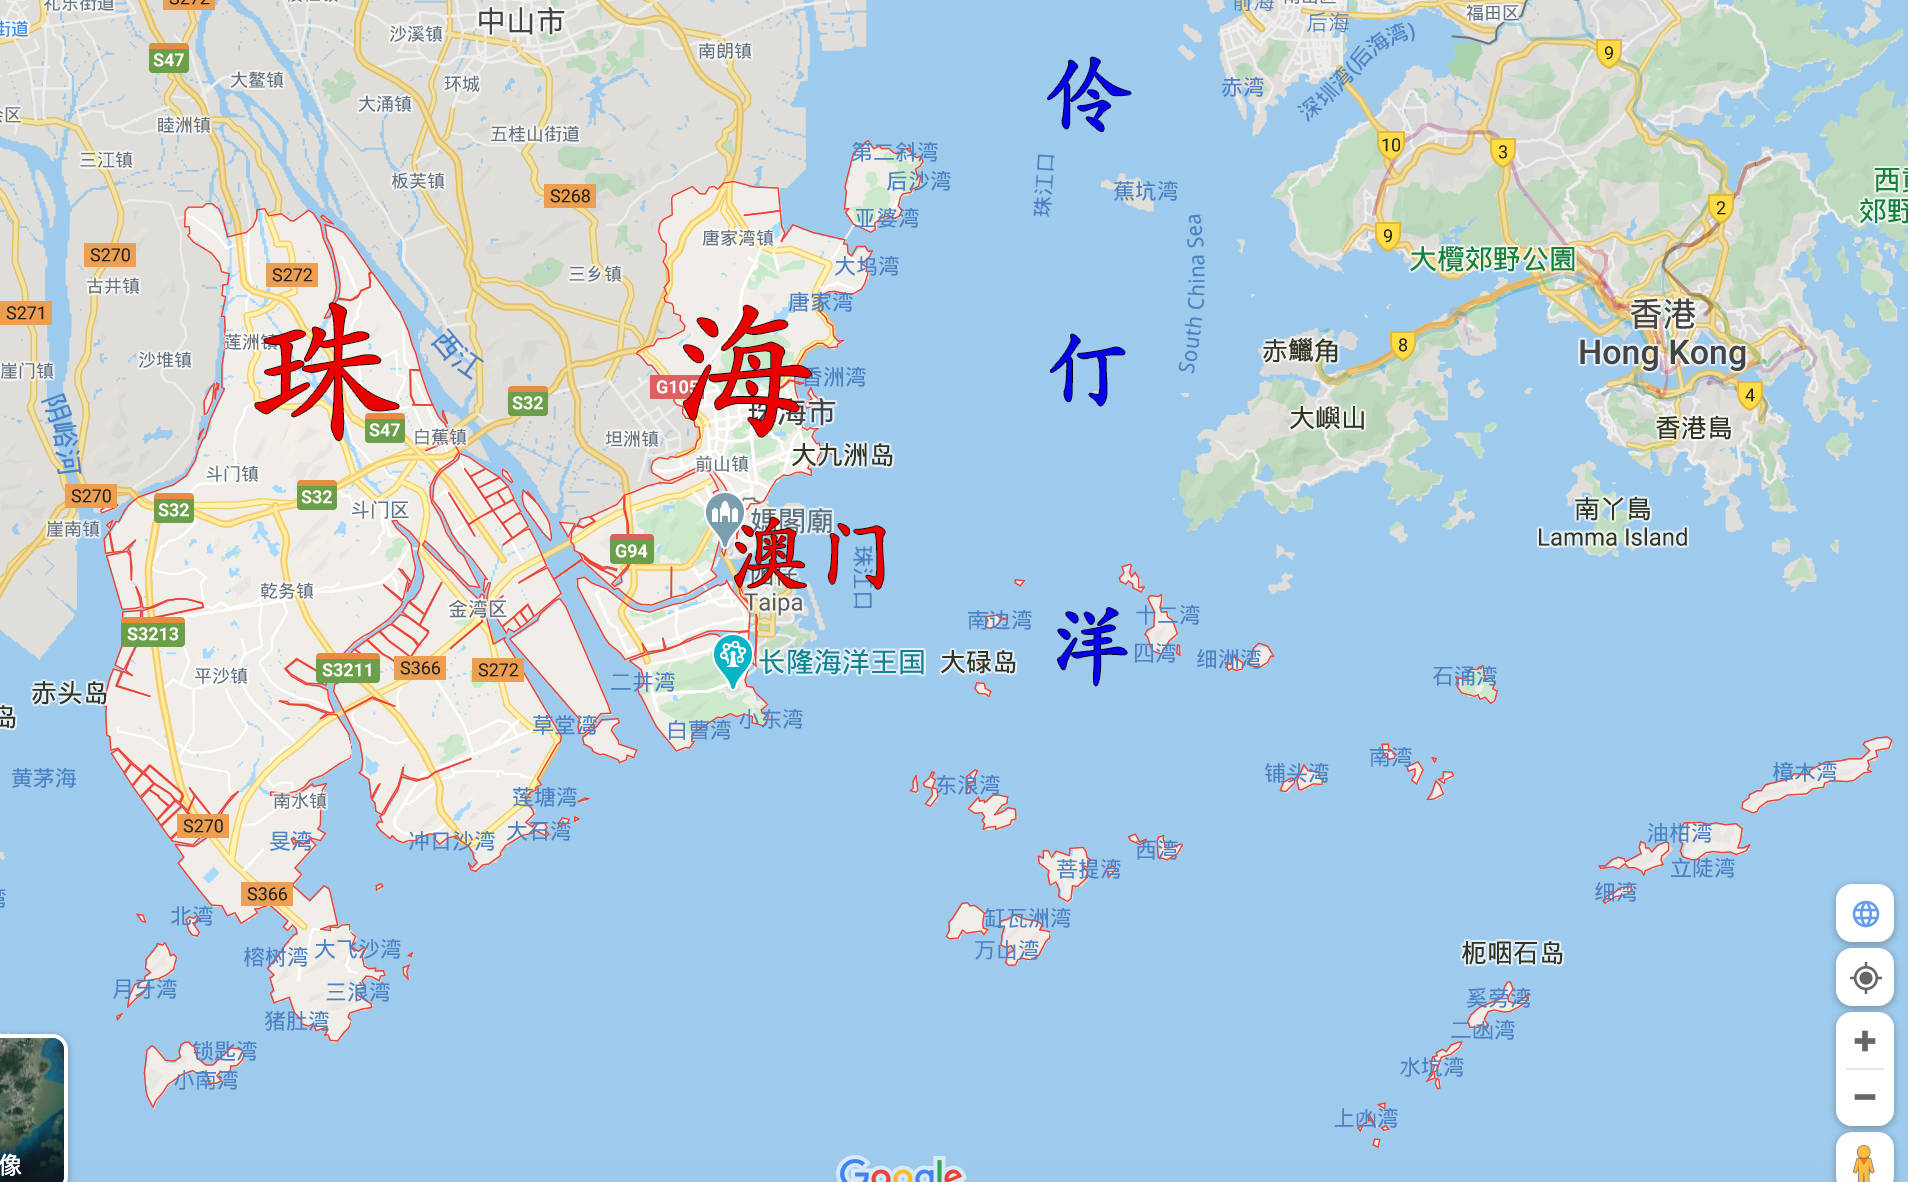 港珠澳的相对位置 地图来源:google earth 地图编辑:搜狐城市